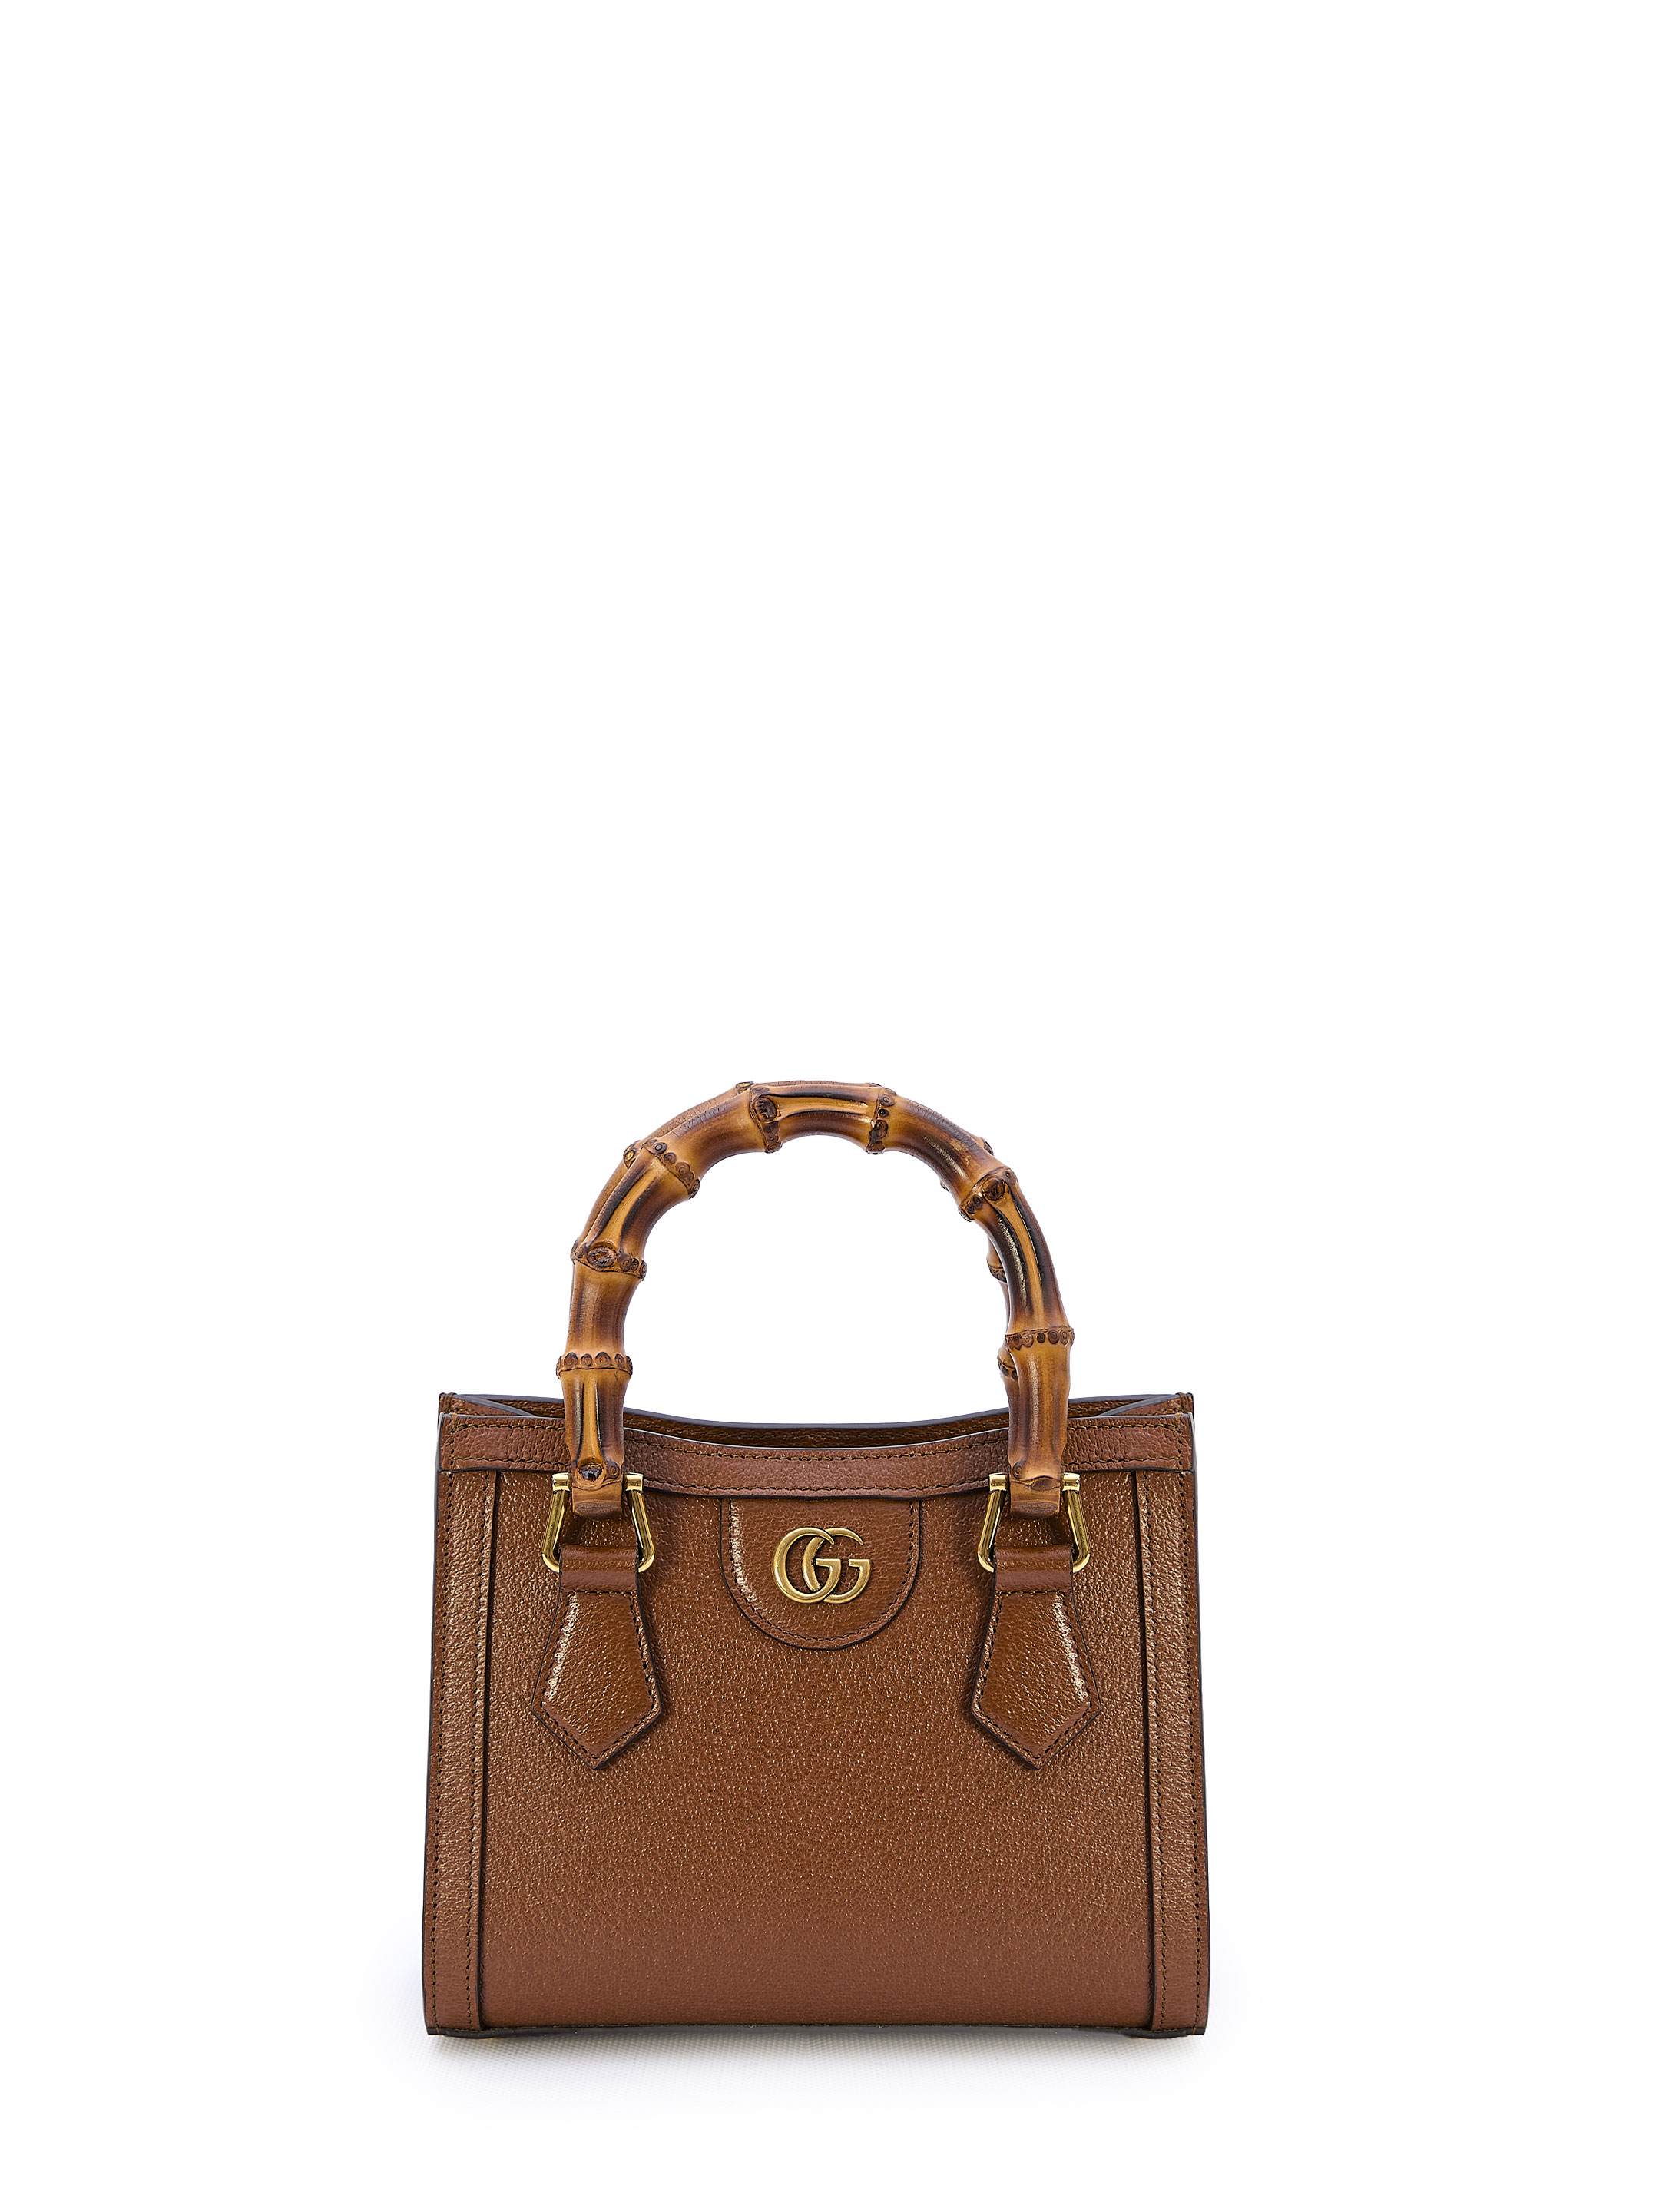 Мини сумка Gucci Diana, коричневый